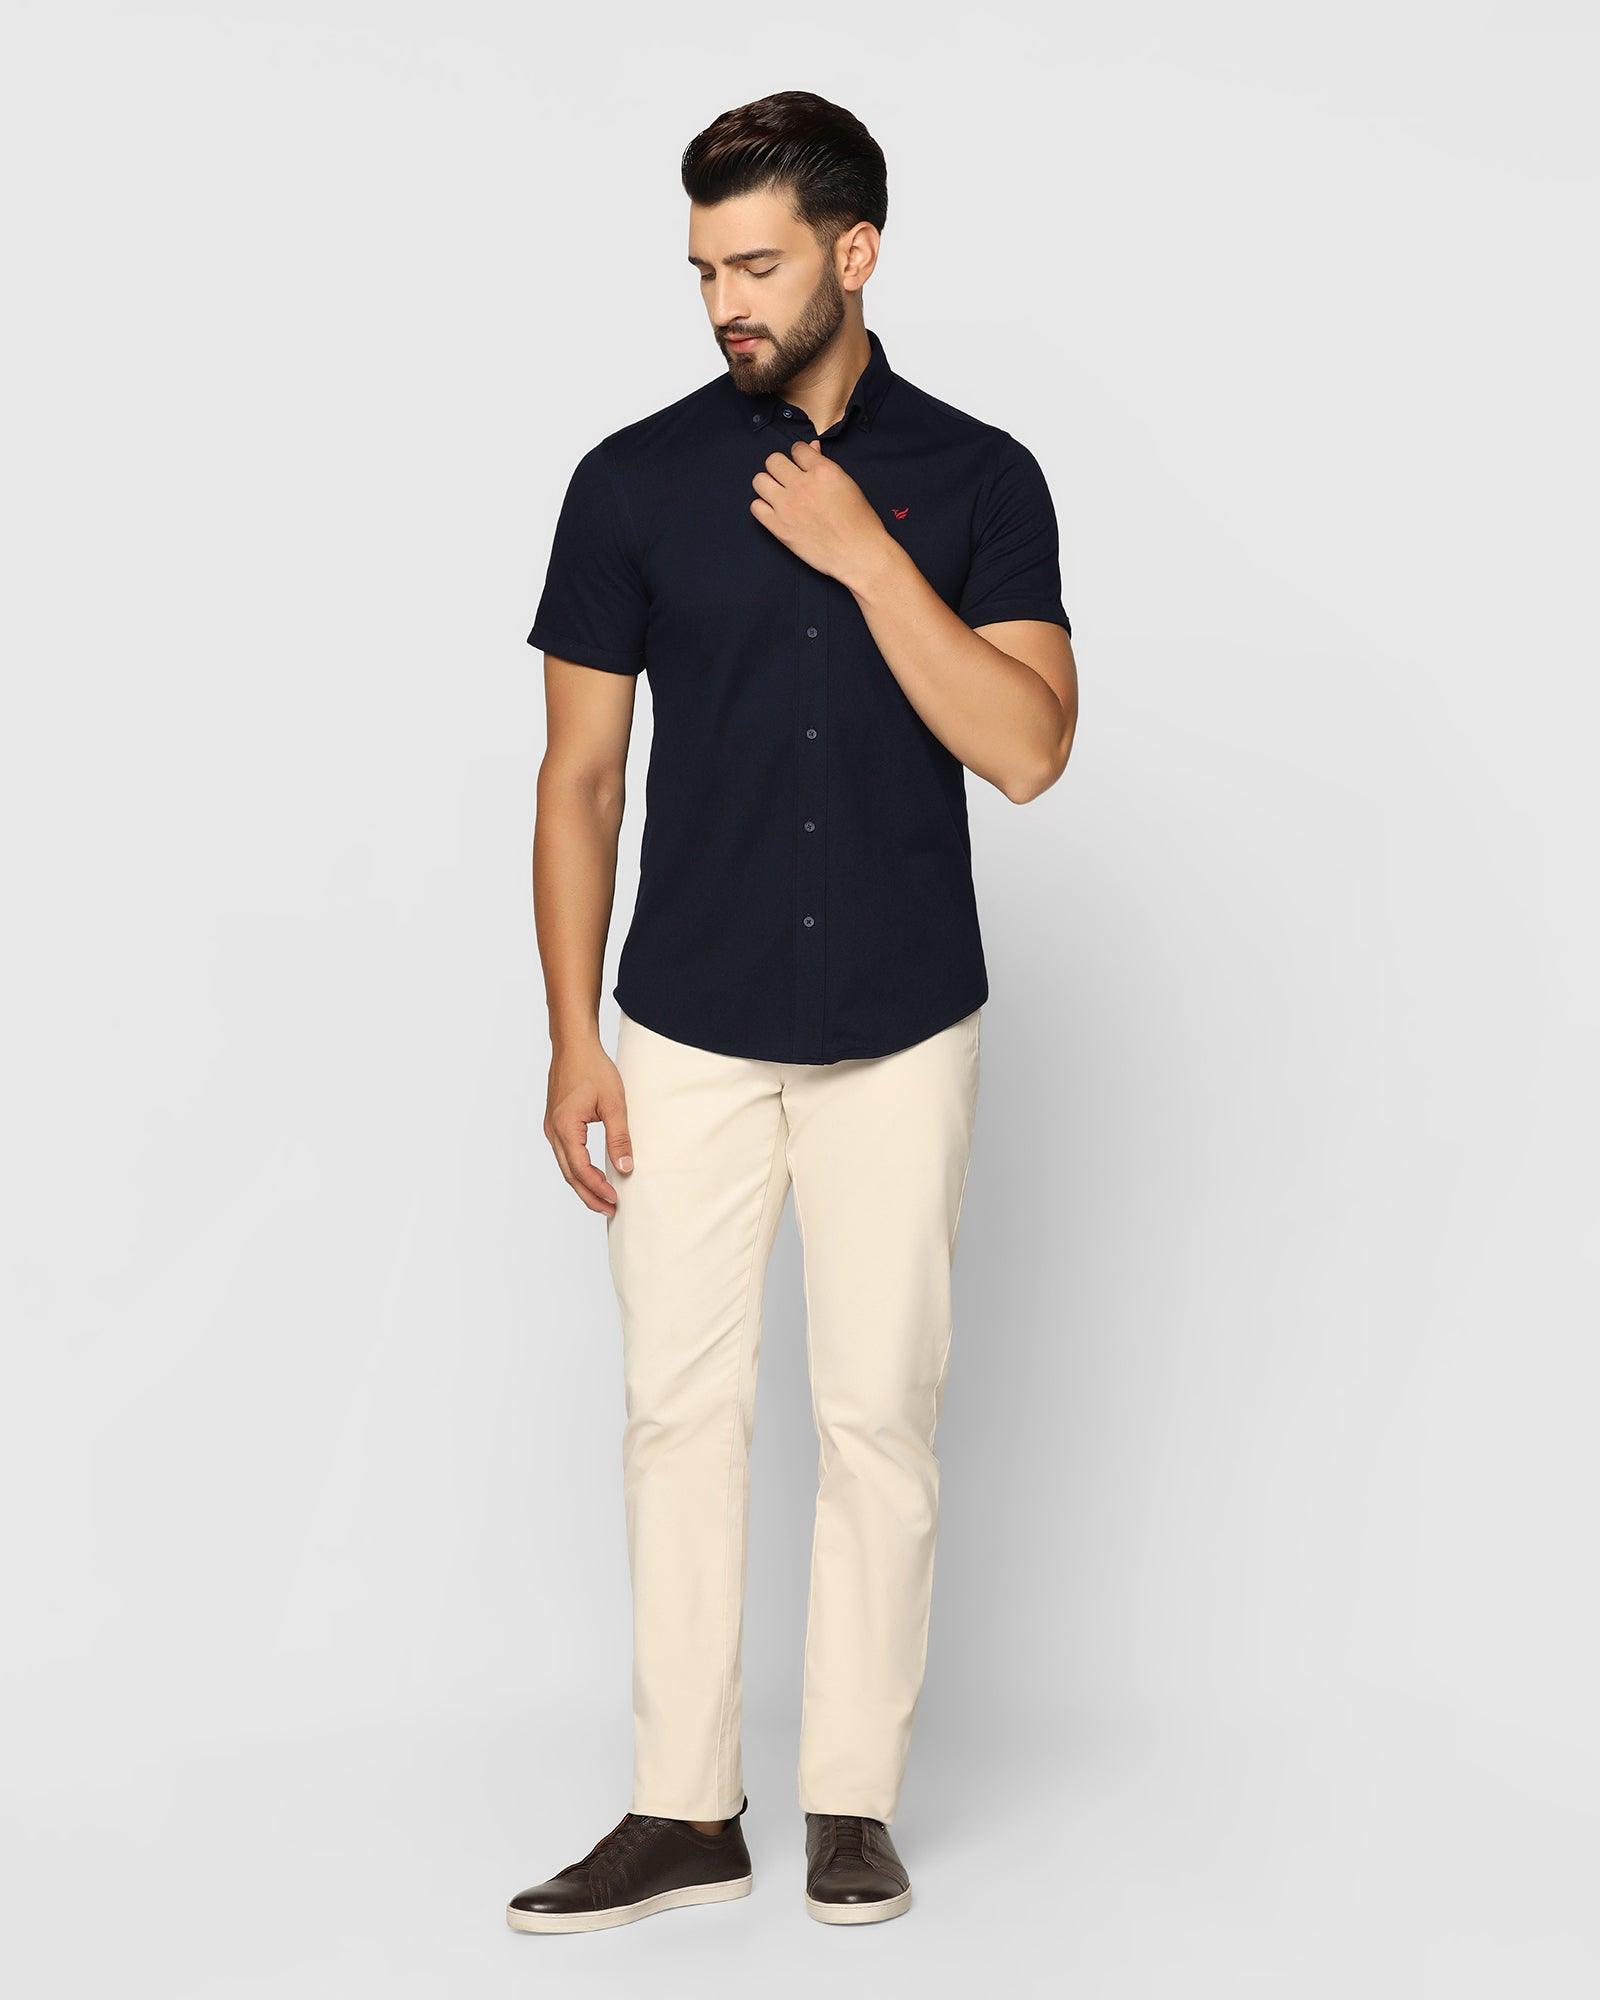 Formal Half Sleeve Navy Solid Shirt - Pareto